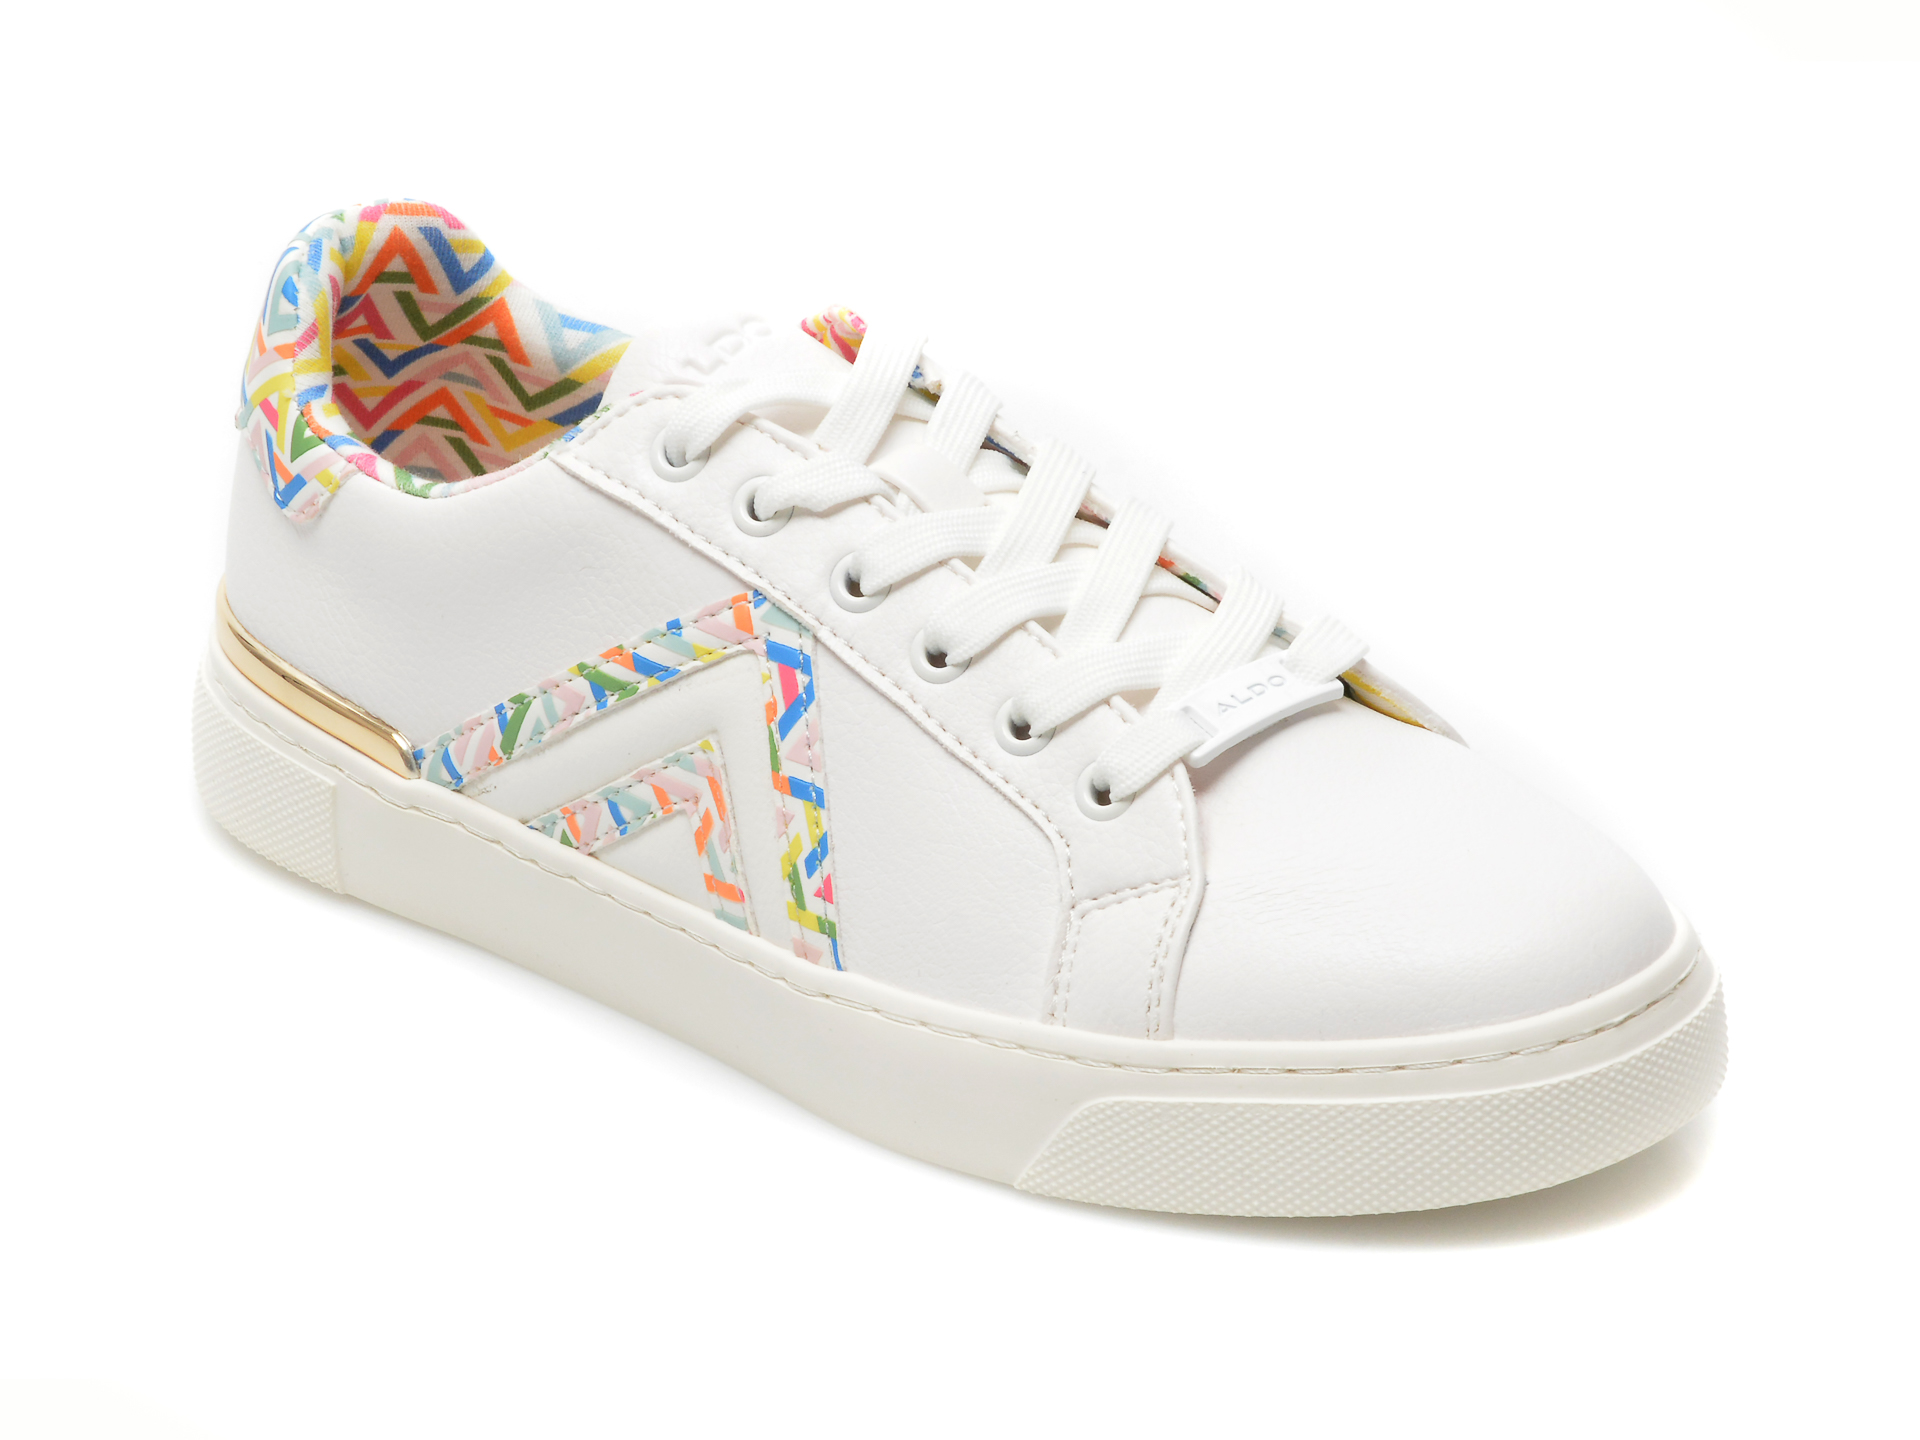 Pantofi ALDO albi, FRAN965, din piele ecologica Aldo